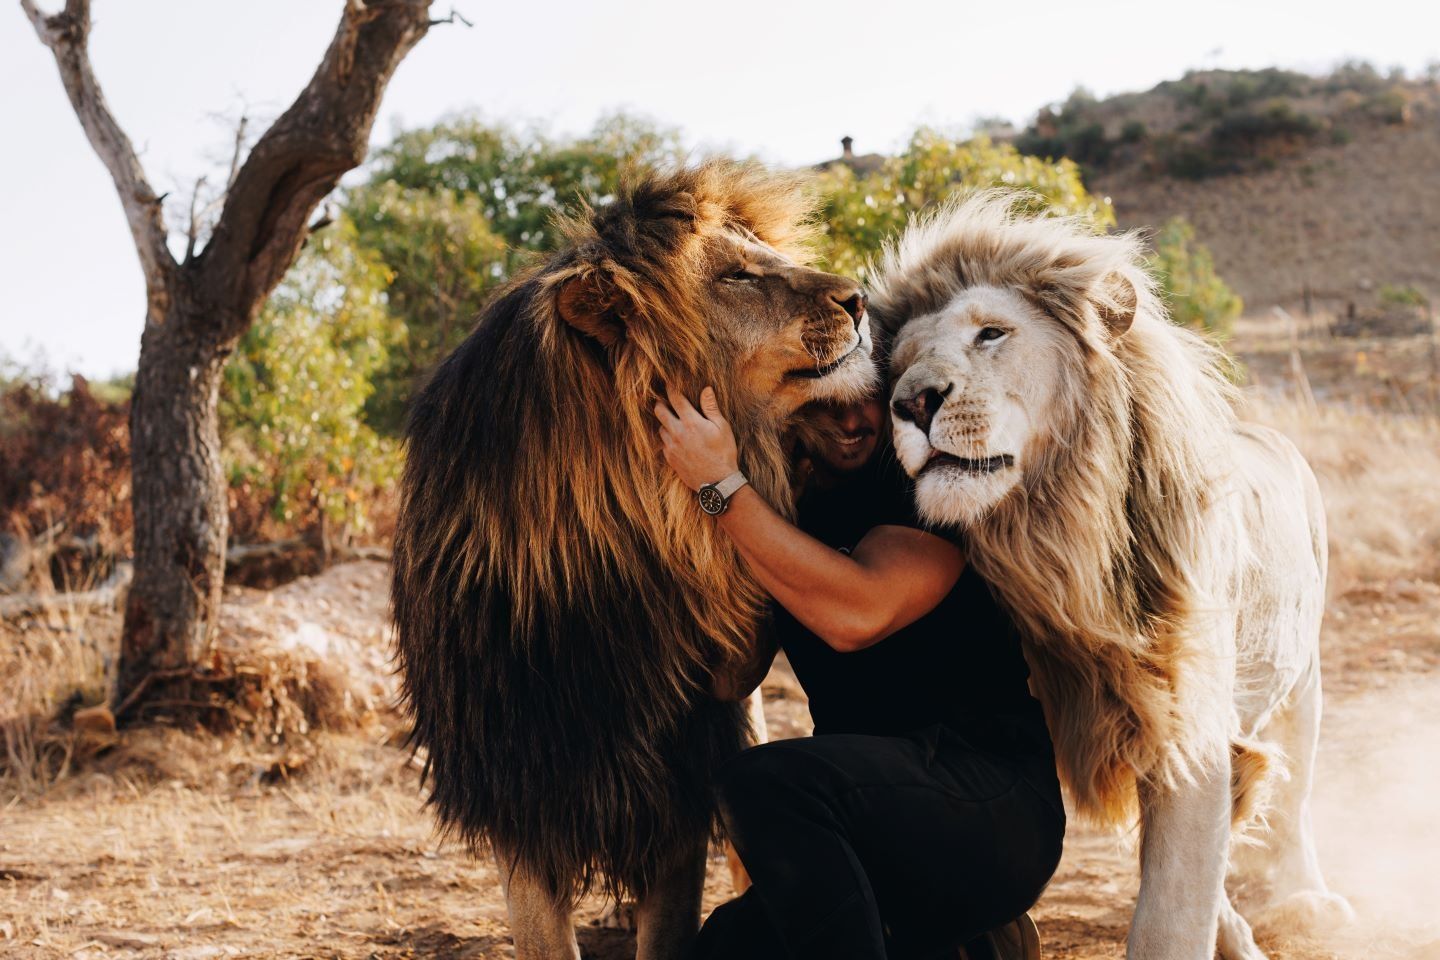 Dean Schneider with Lions